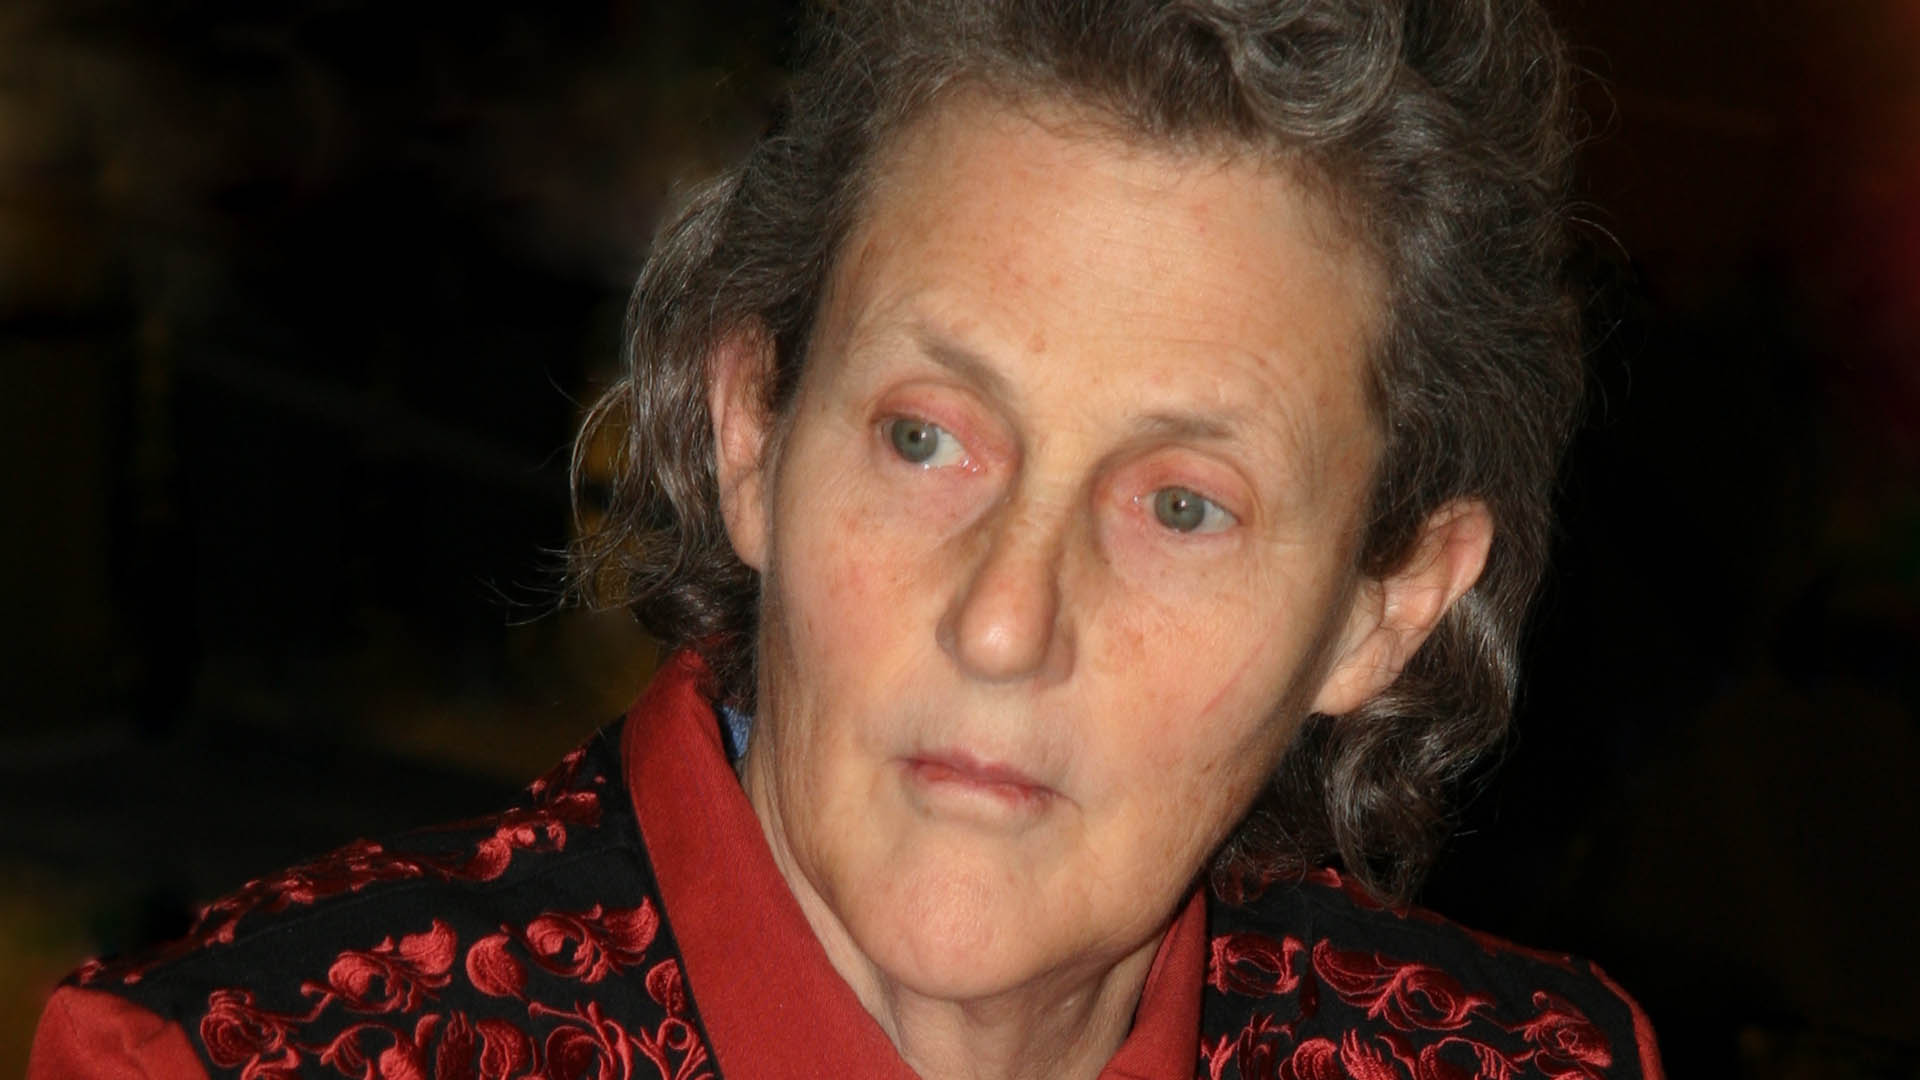 La divulgatrice Temple Grandin che, grazie alla propria testimonianza di persona autistica, ha contribuito alla consapevolezza sul tema dell'autismo.